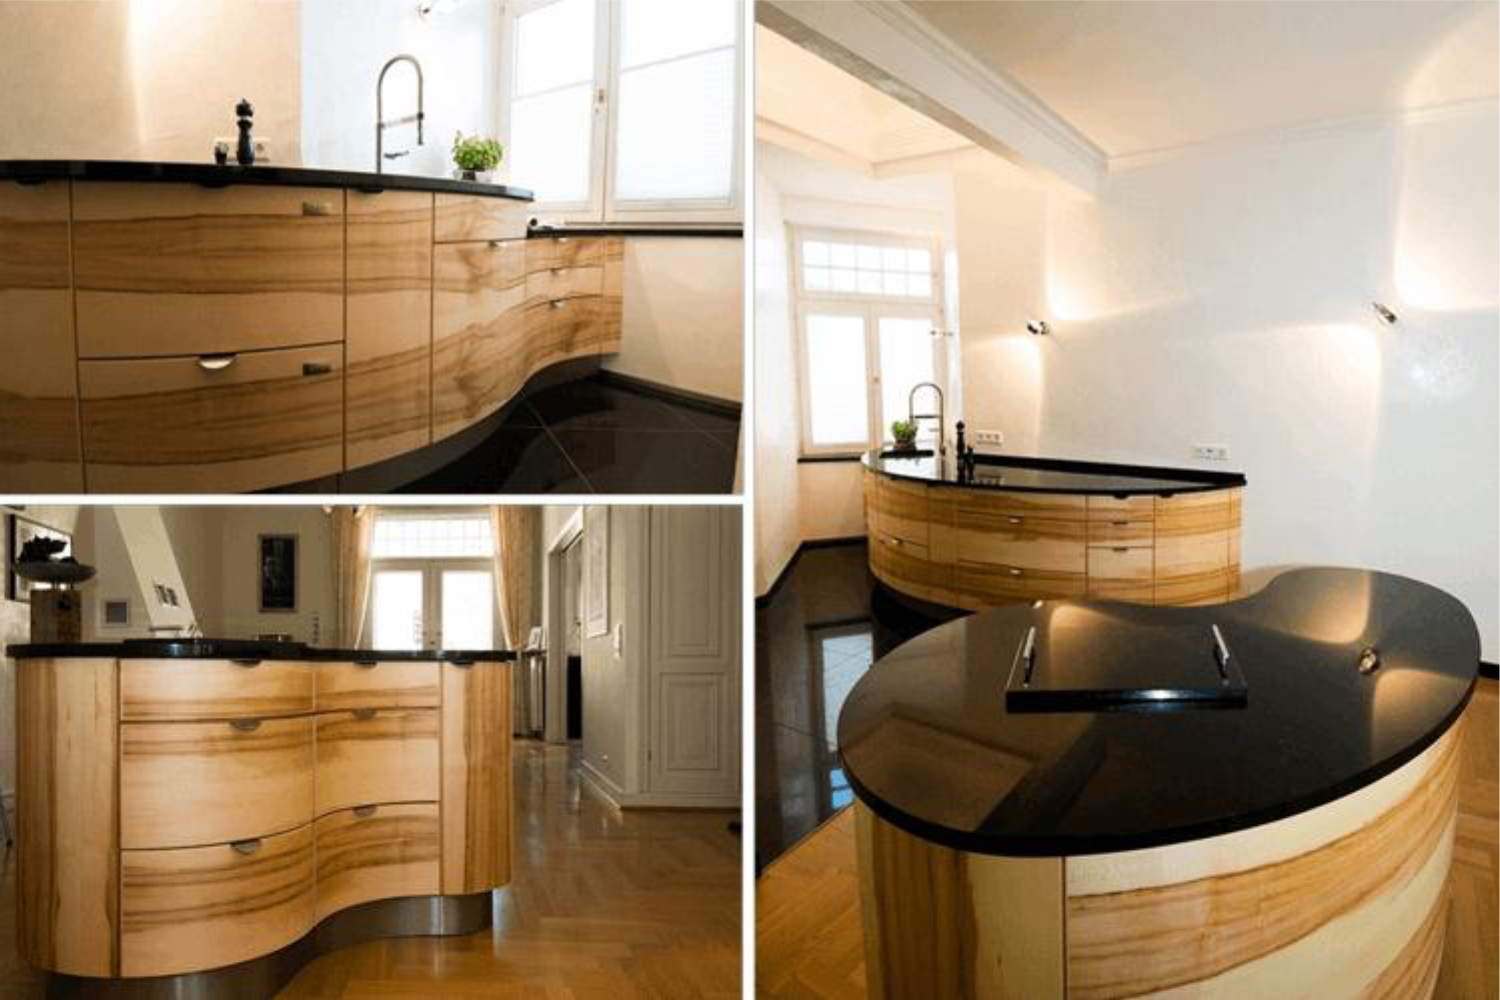 runde Küchen sind eine Spezialität der pfister Möbelwerkstatt bei runden Küchen aus Massivholz ist Pfister Möbelwerkstatt Marktführer